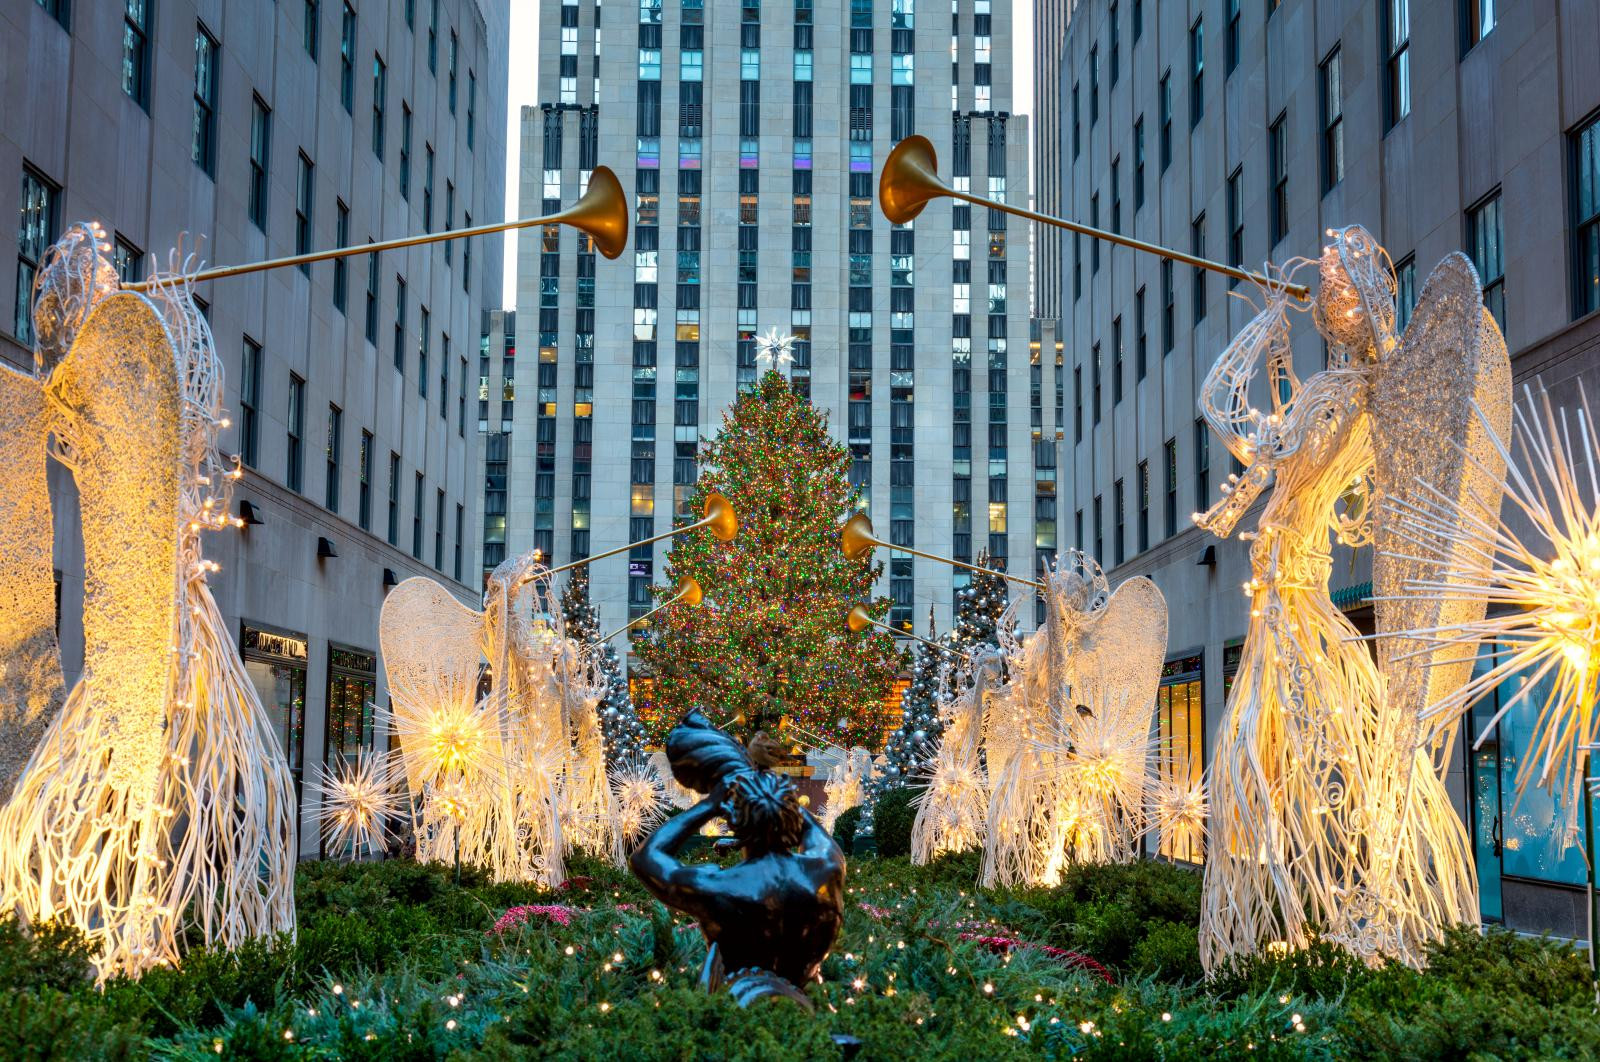 Rockefeller Christmas Tree Lighting 2019
 The Rockefeller Christmas Tree 2019